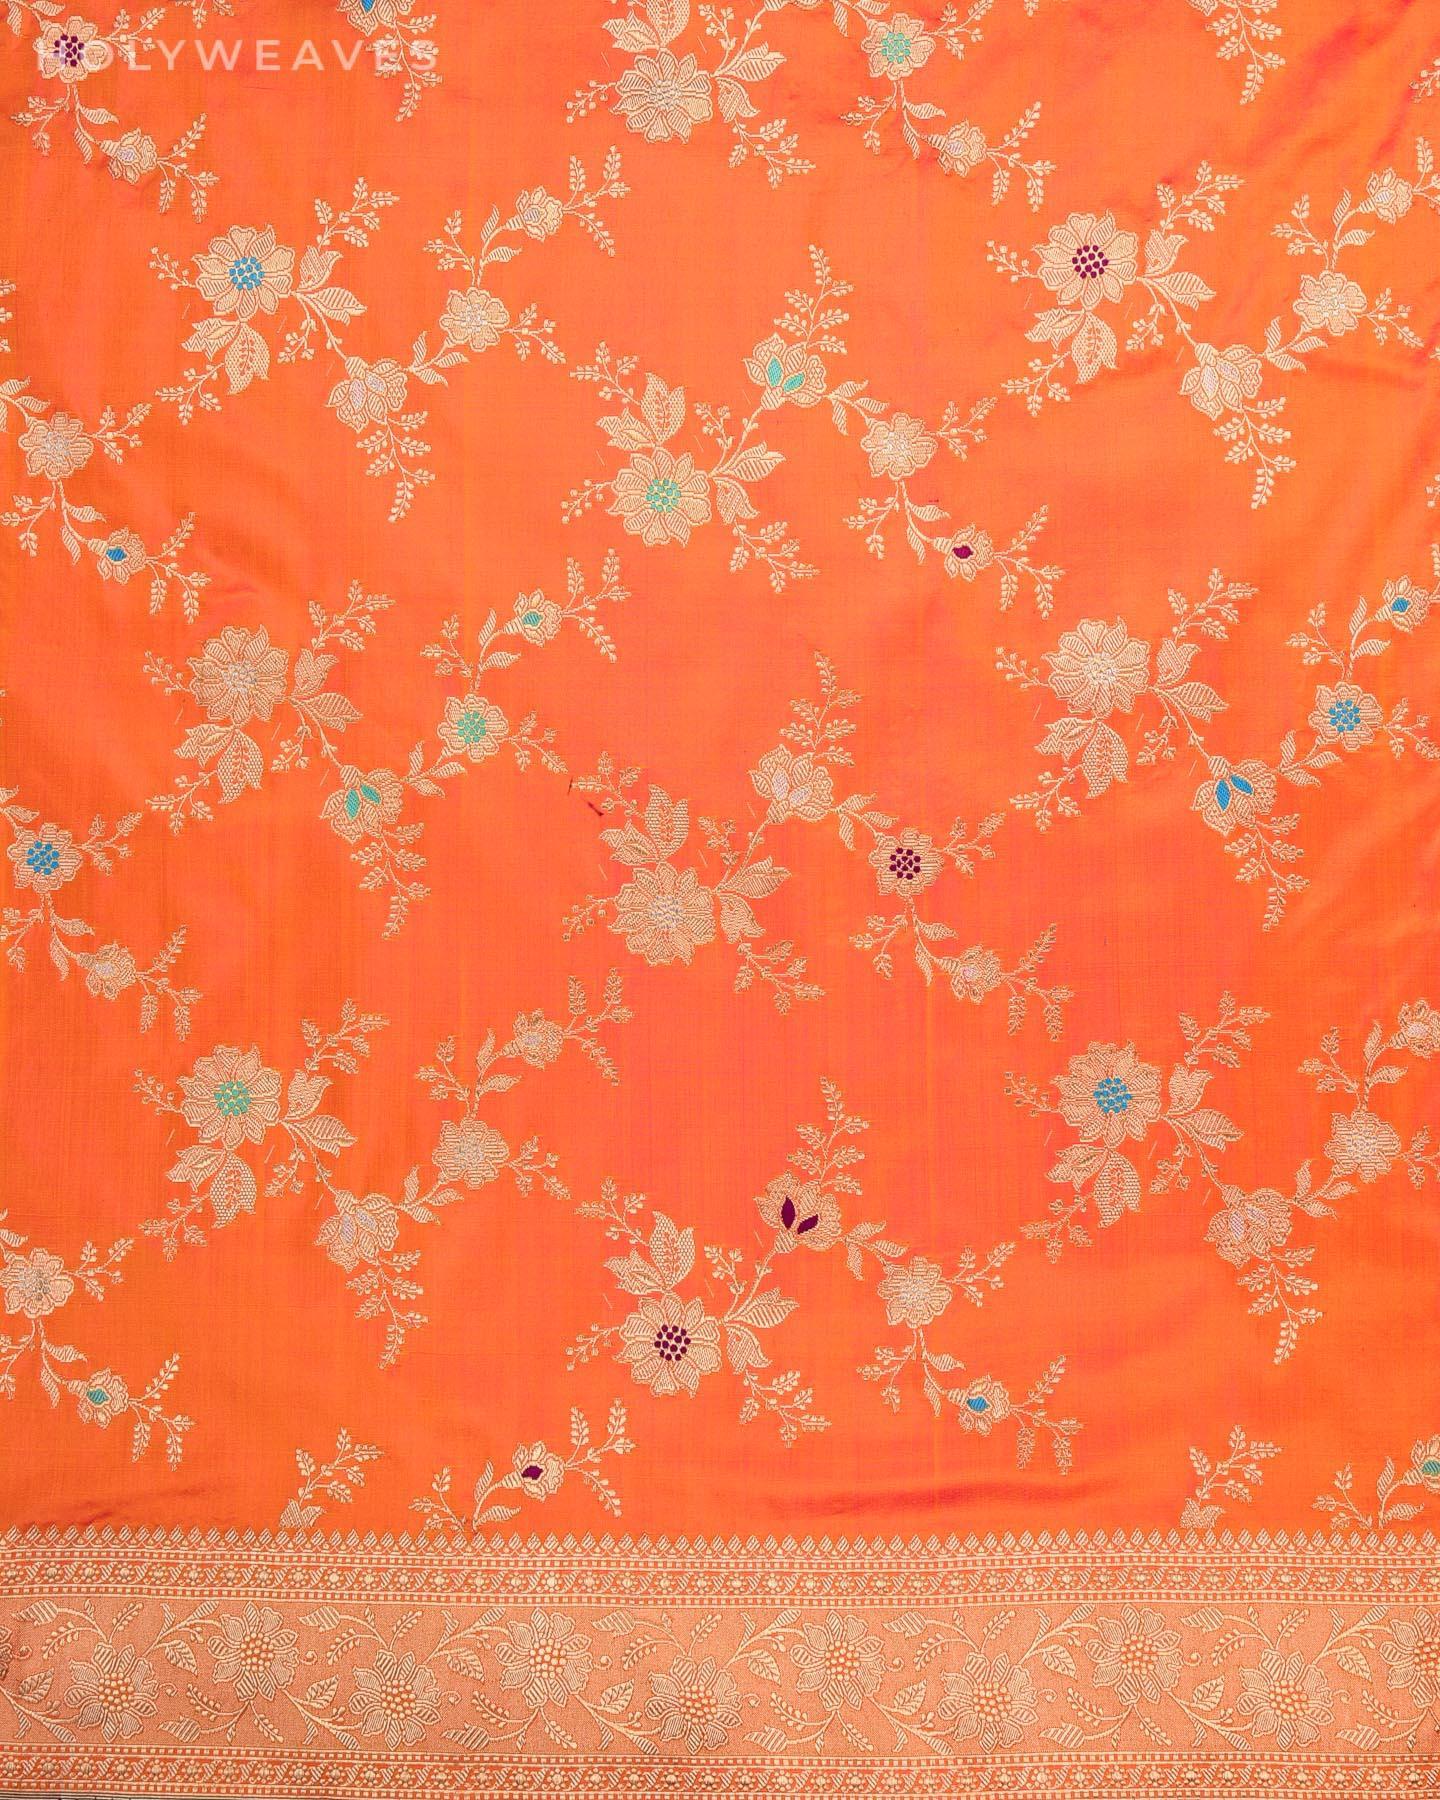 Shot Orange Banarasi Meena Jaal All-over Kadhuan Brocade Handwoven Katan Silk Saree - By HolyWeaves, Benares